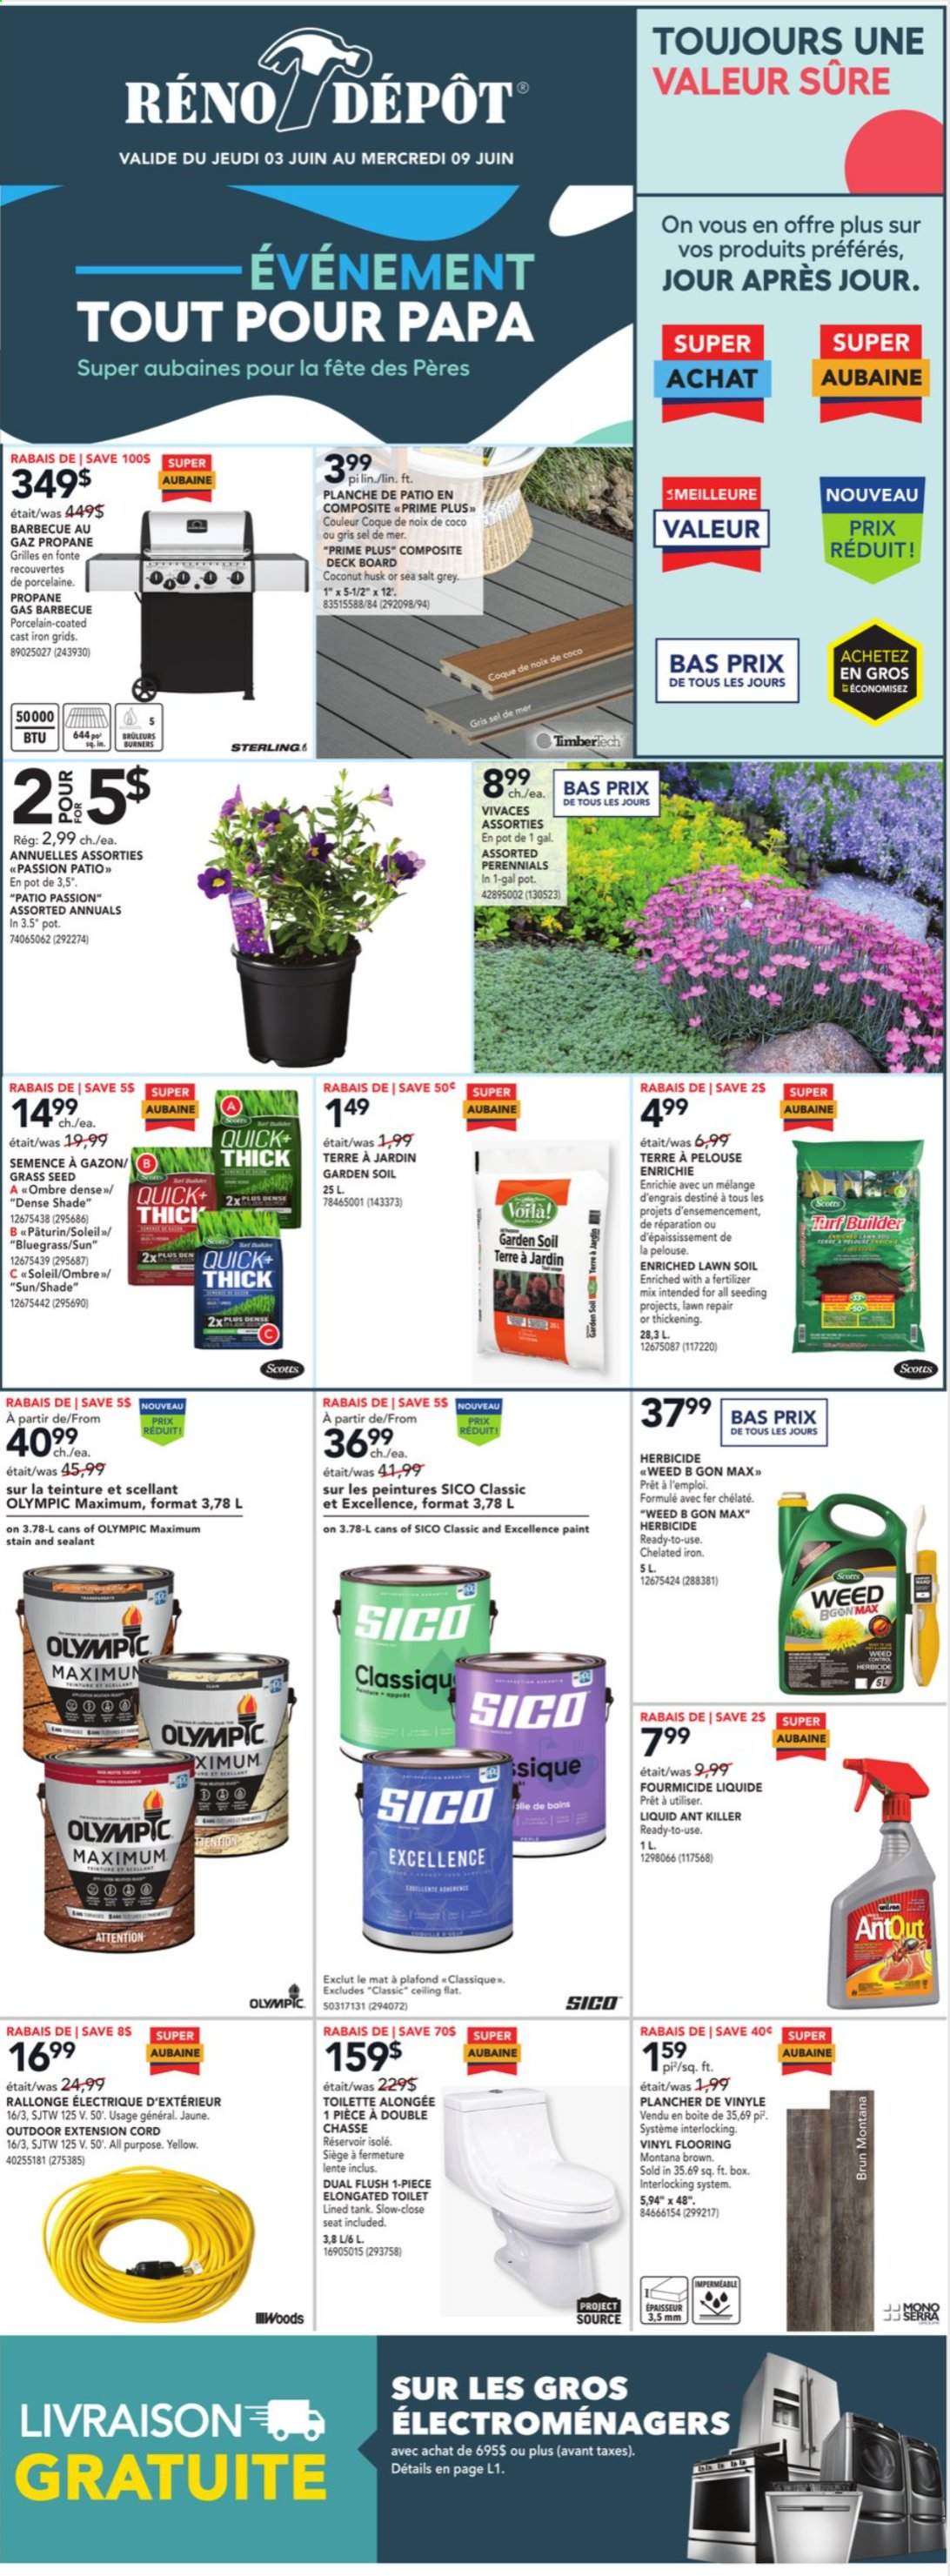 thumbnail - Réno-Dépôt Flyer - June 03, 2021 - June 09, 2021 - Sales products - toilet, paint, vinyl, extension cord, pot, plant seeds, fertilizer, turf builder, garden soil, grass seed, tank. Page 1.